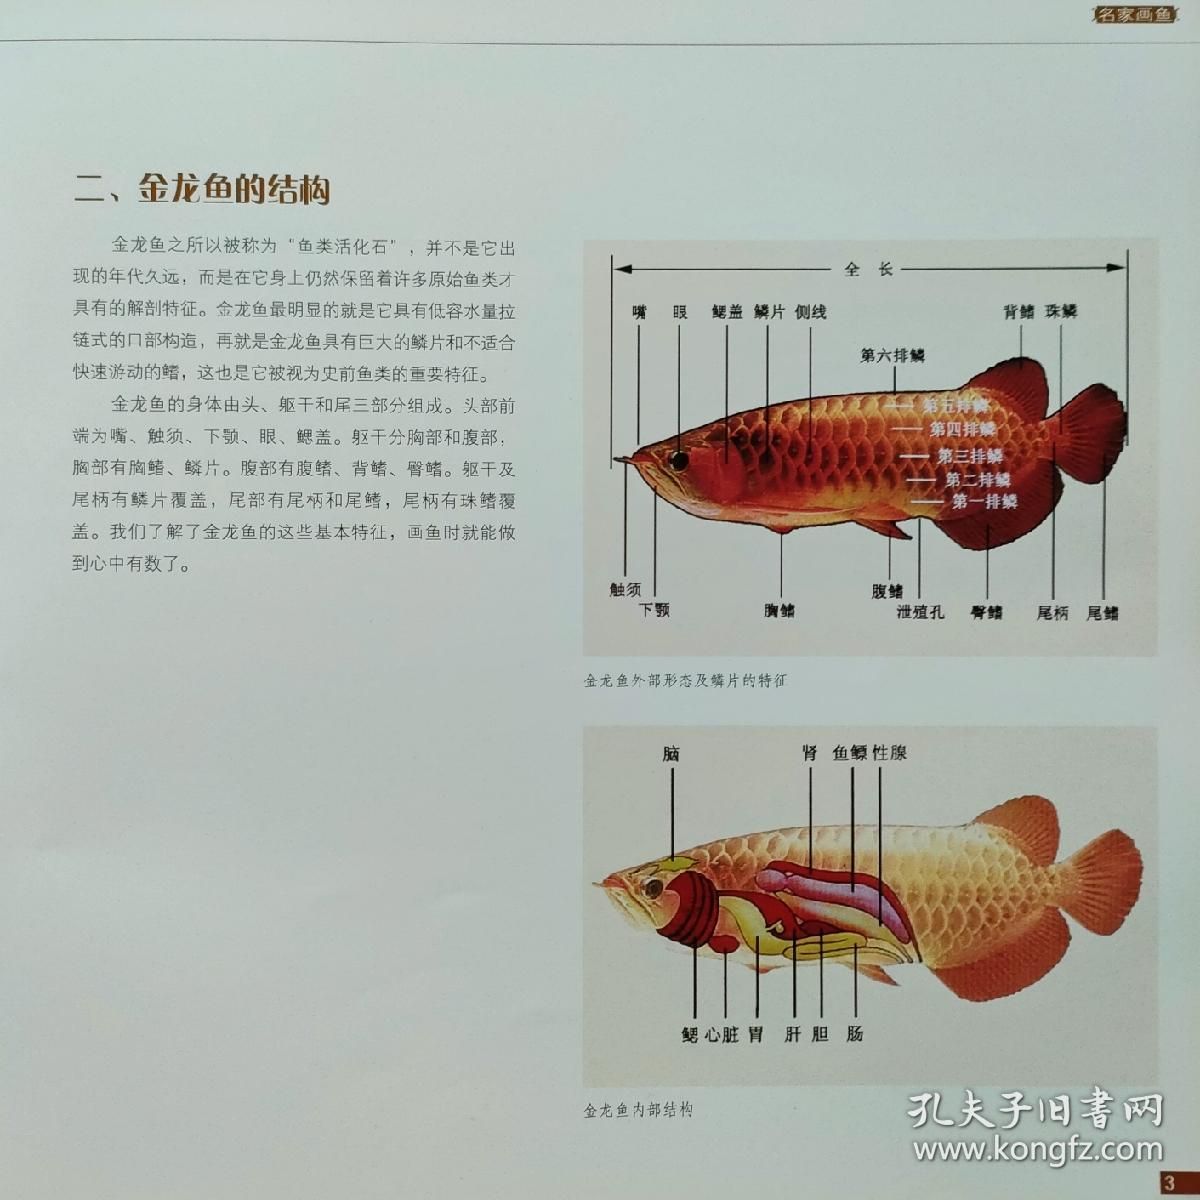 国画 金龙鱼：中国传统文化的魅力，国画金龙鱼 龙鱼百科 第3张